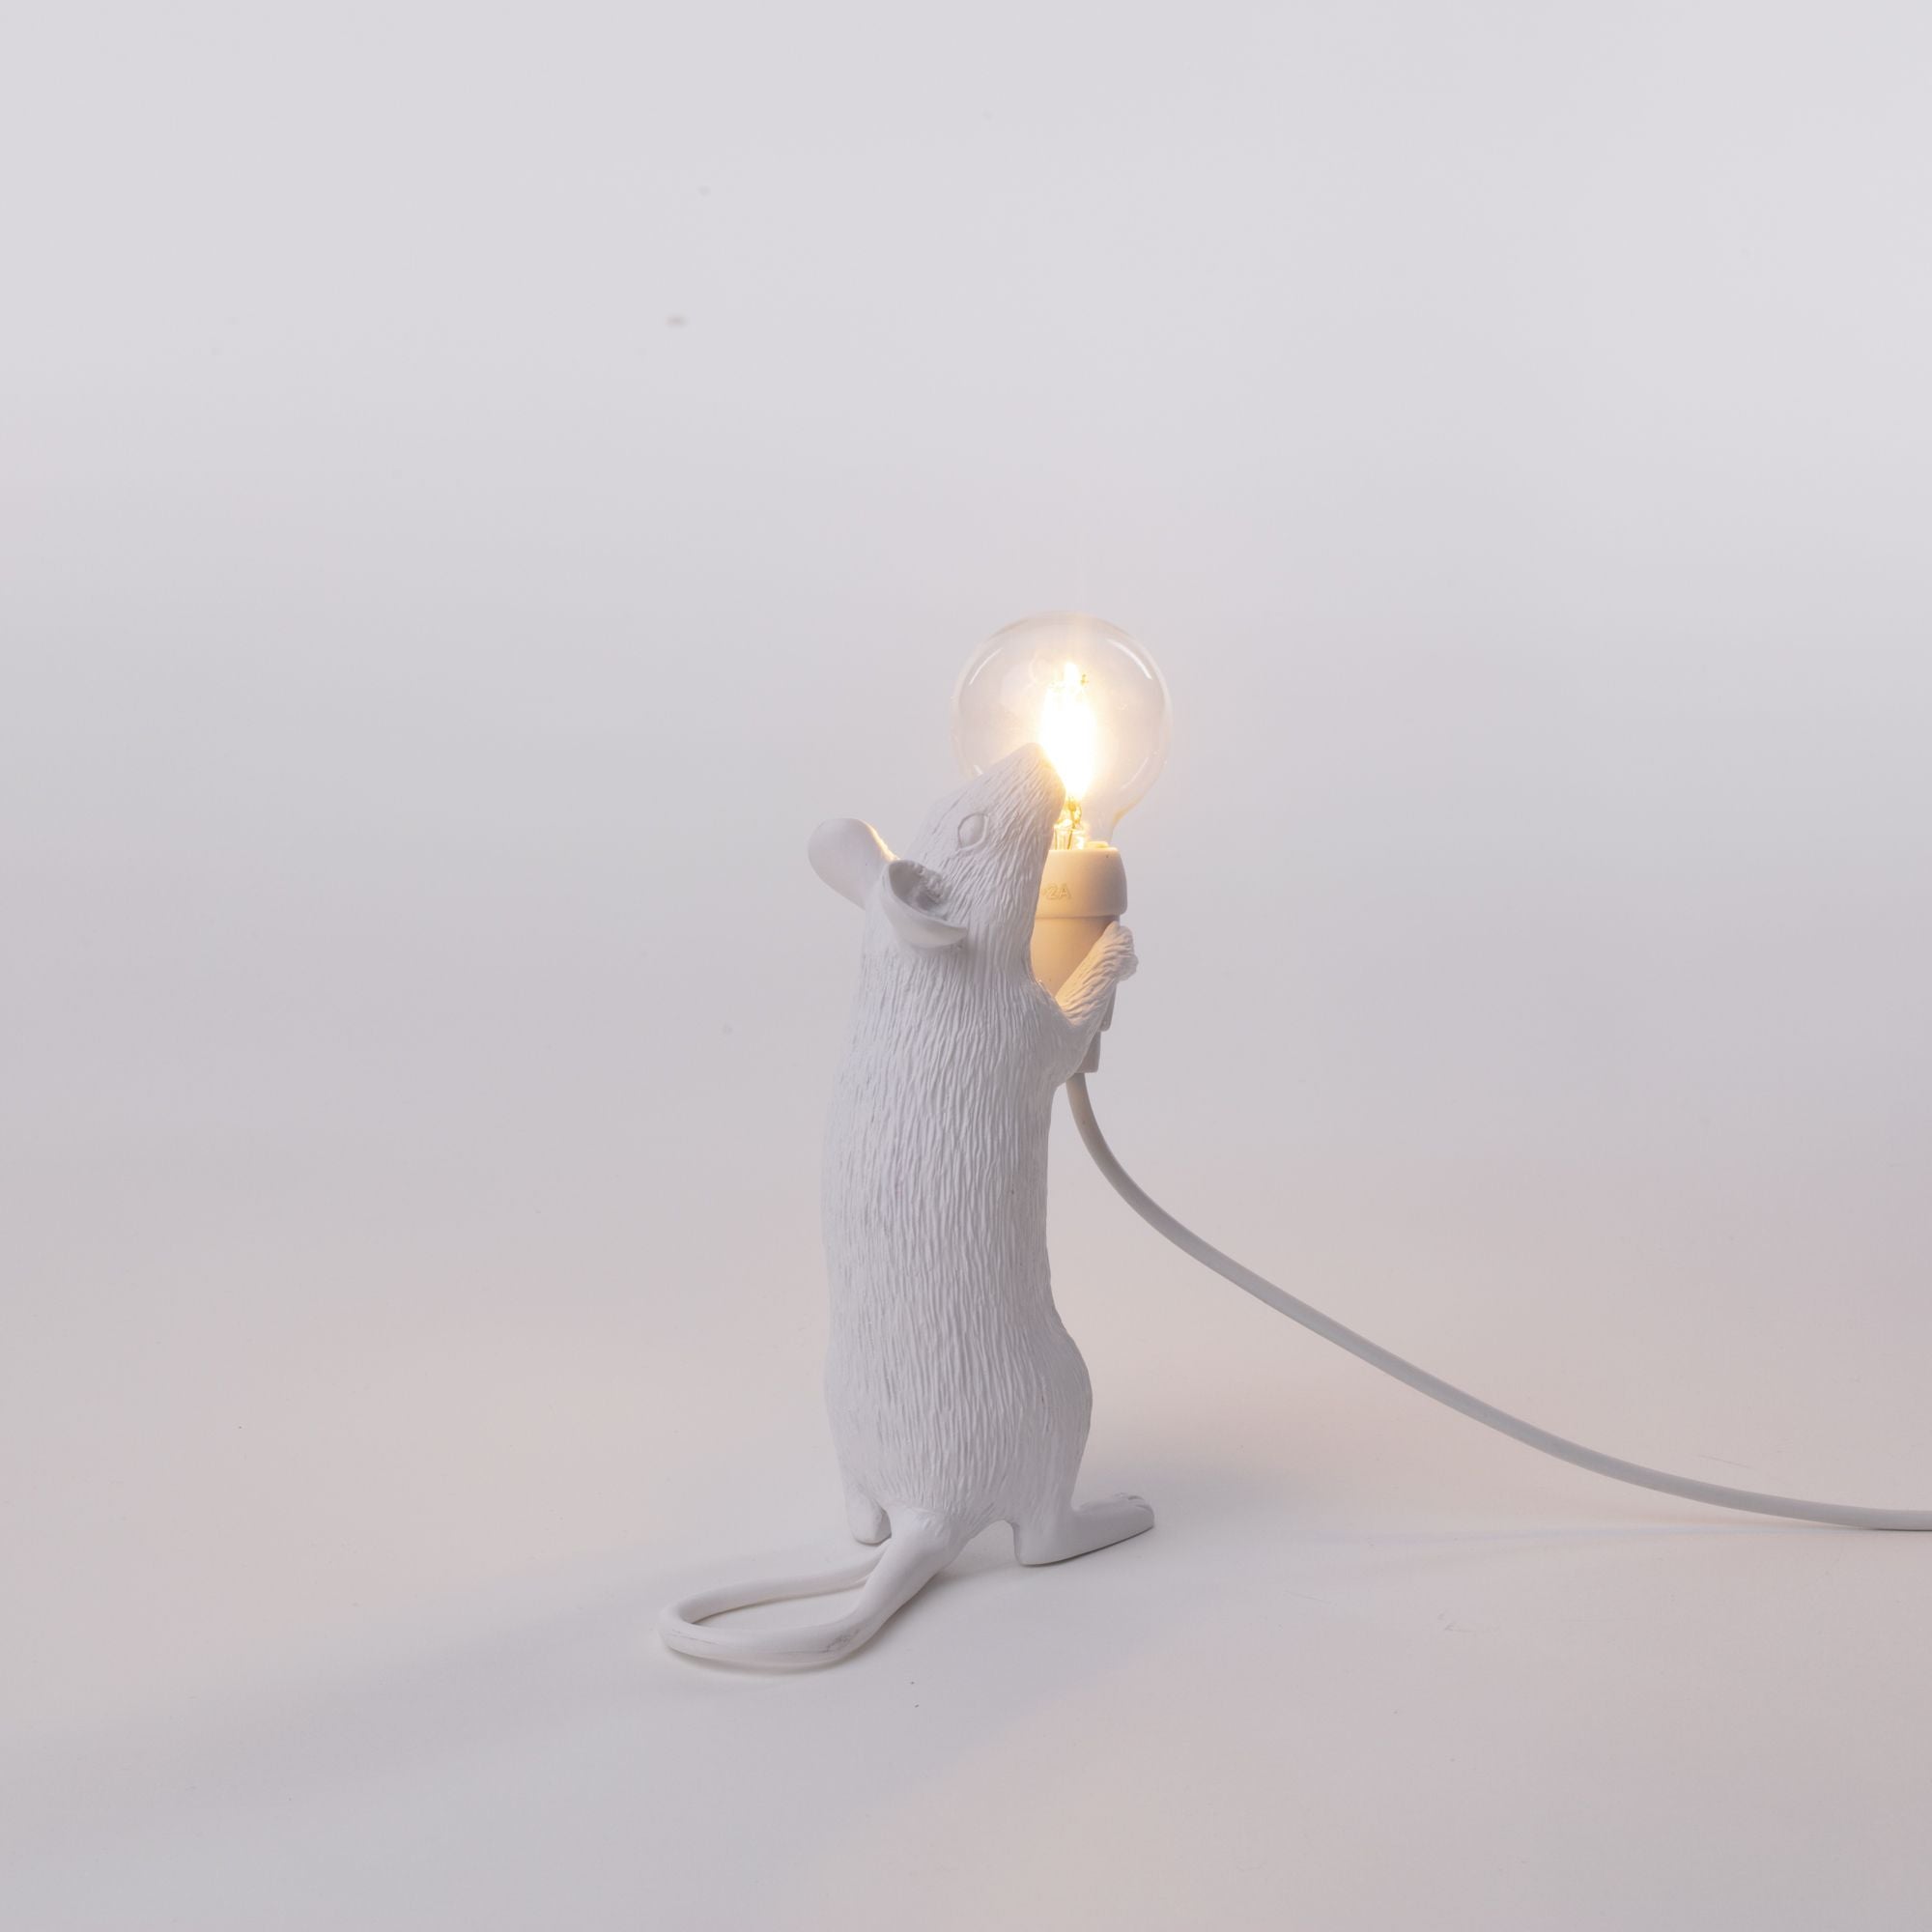 Paso de lámpara de ratón seletti, blanco